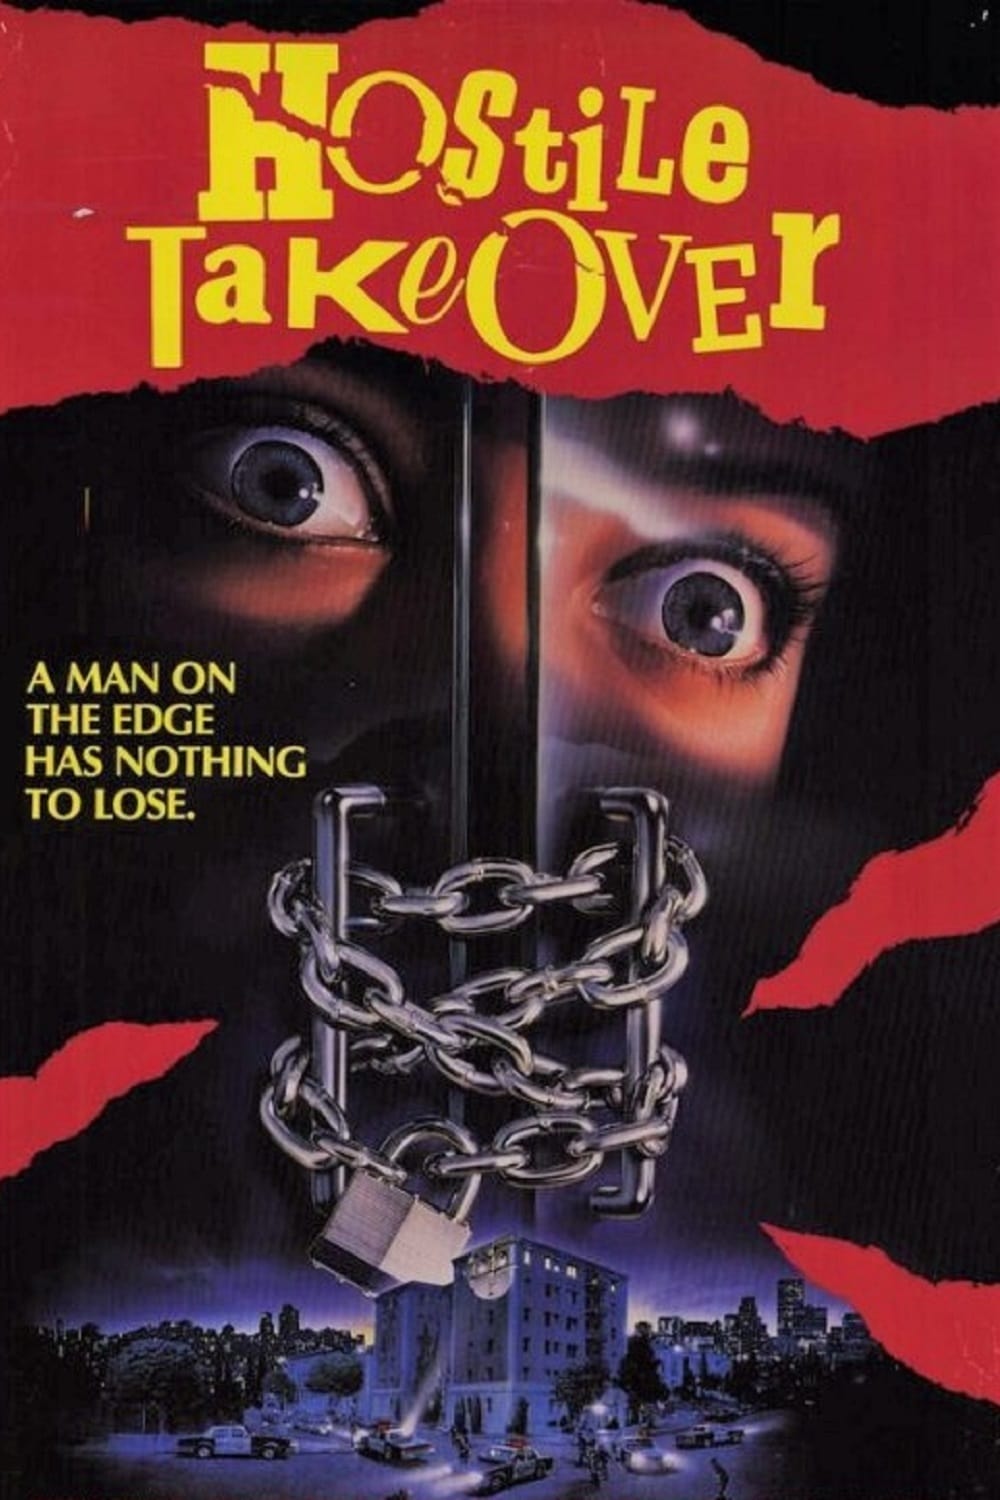 Hostile Takeover (1988)